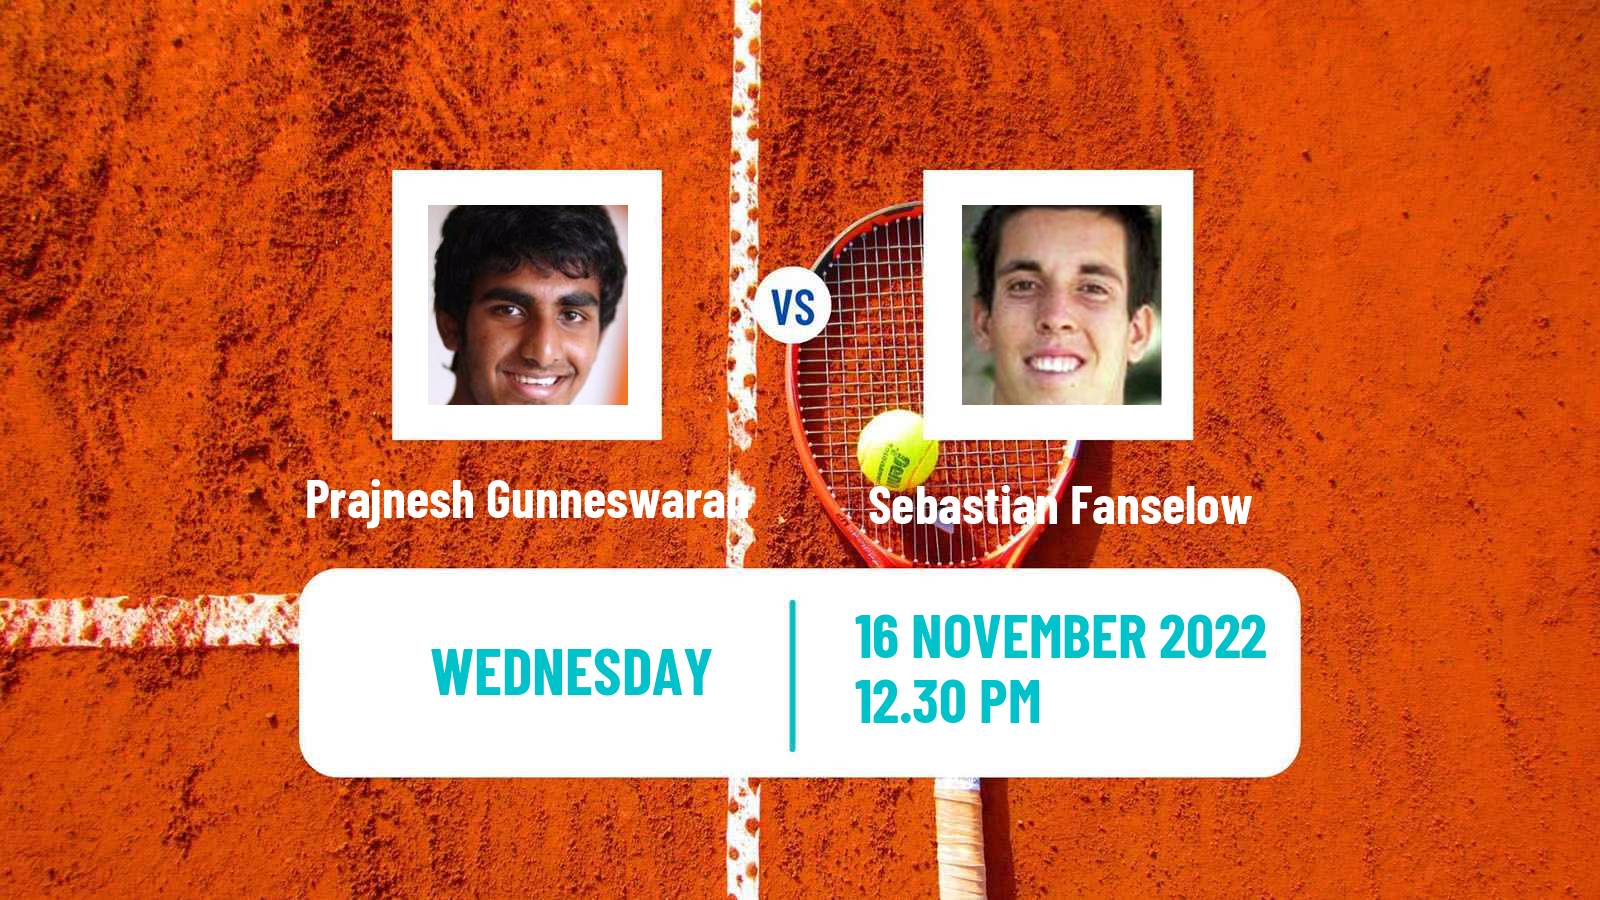 Tennis ATP Challenger Prajnesh Gunneswaran - Sebastian Fanselow